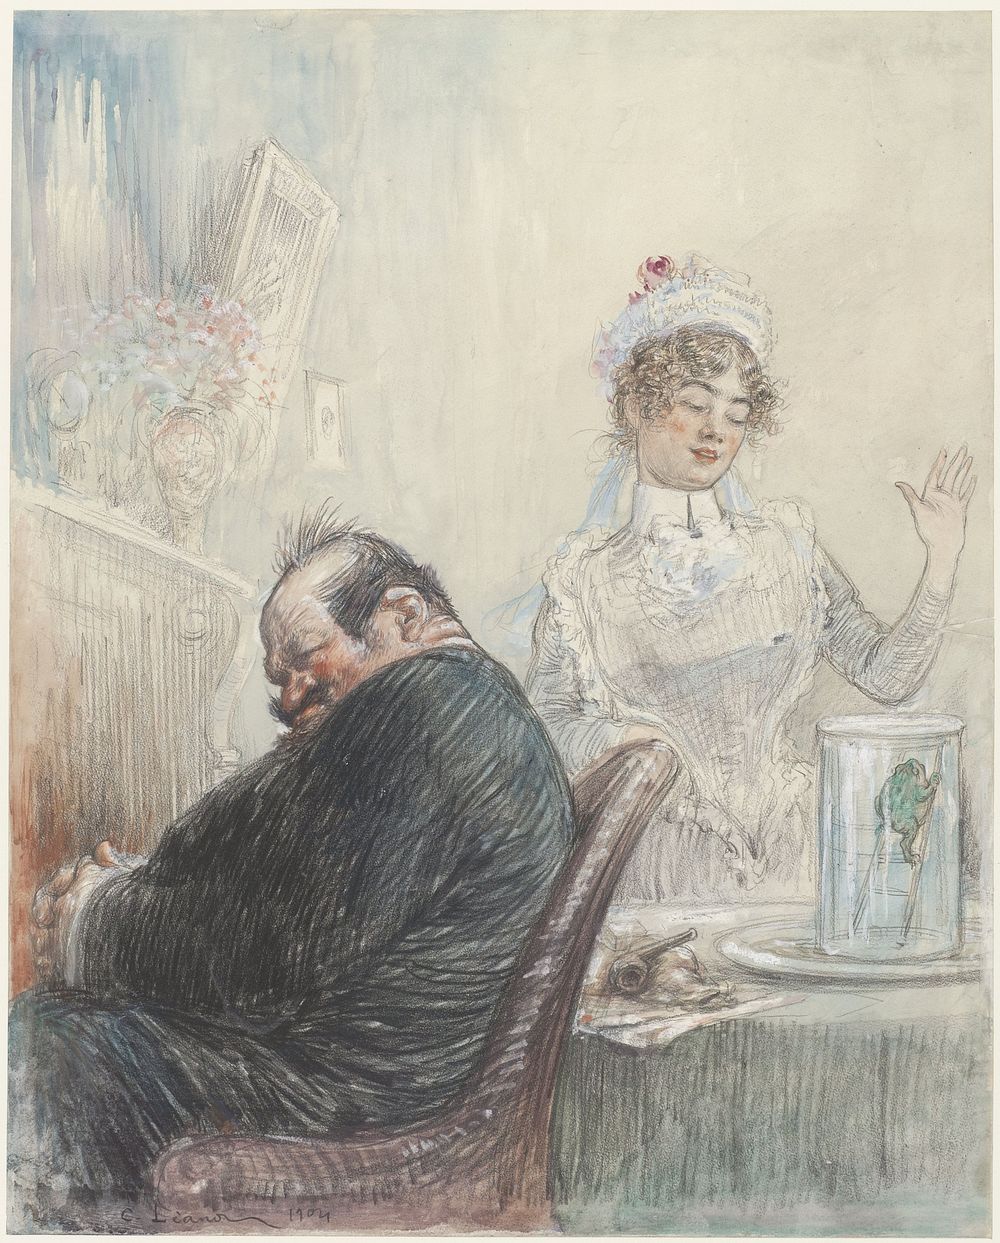 De grijsaard en de kikker (1904) by Charles Lucien Léandre